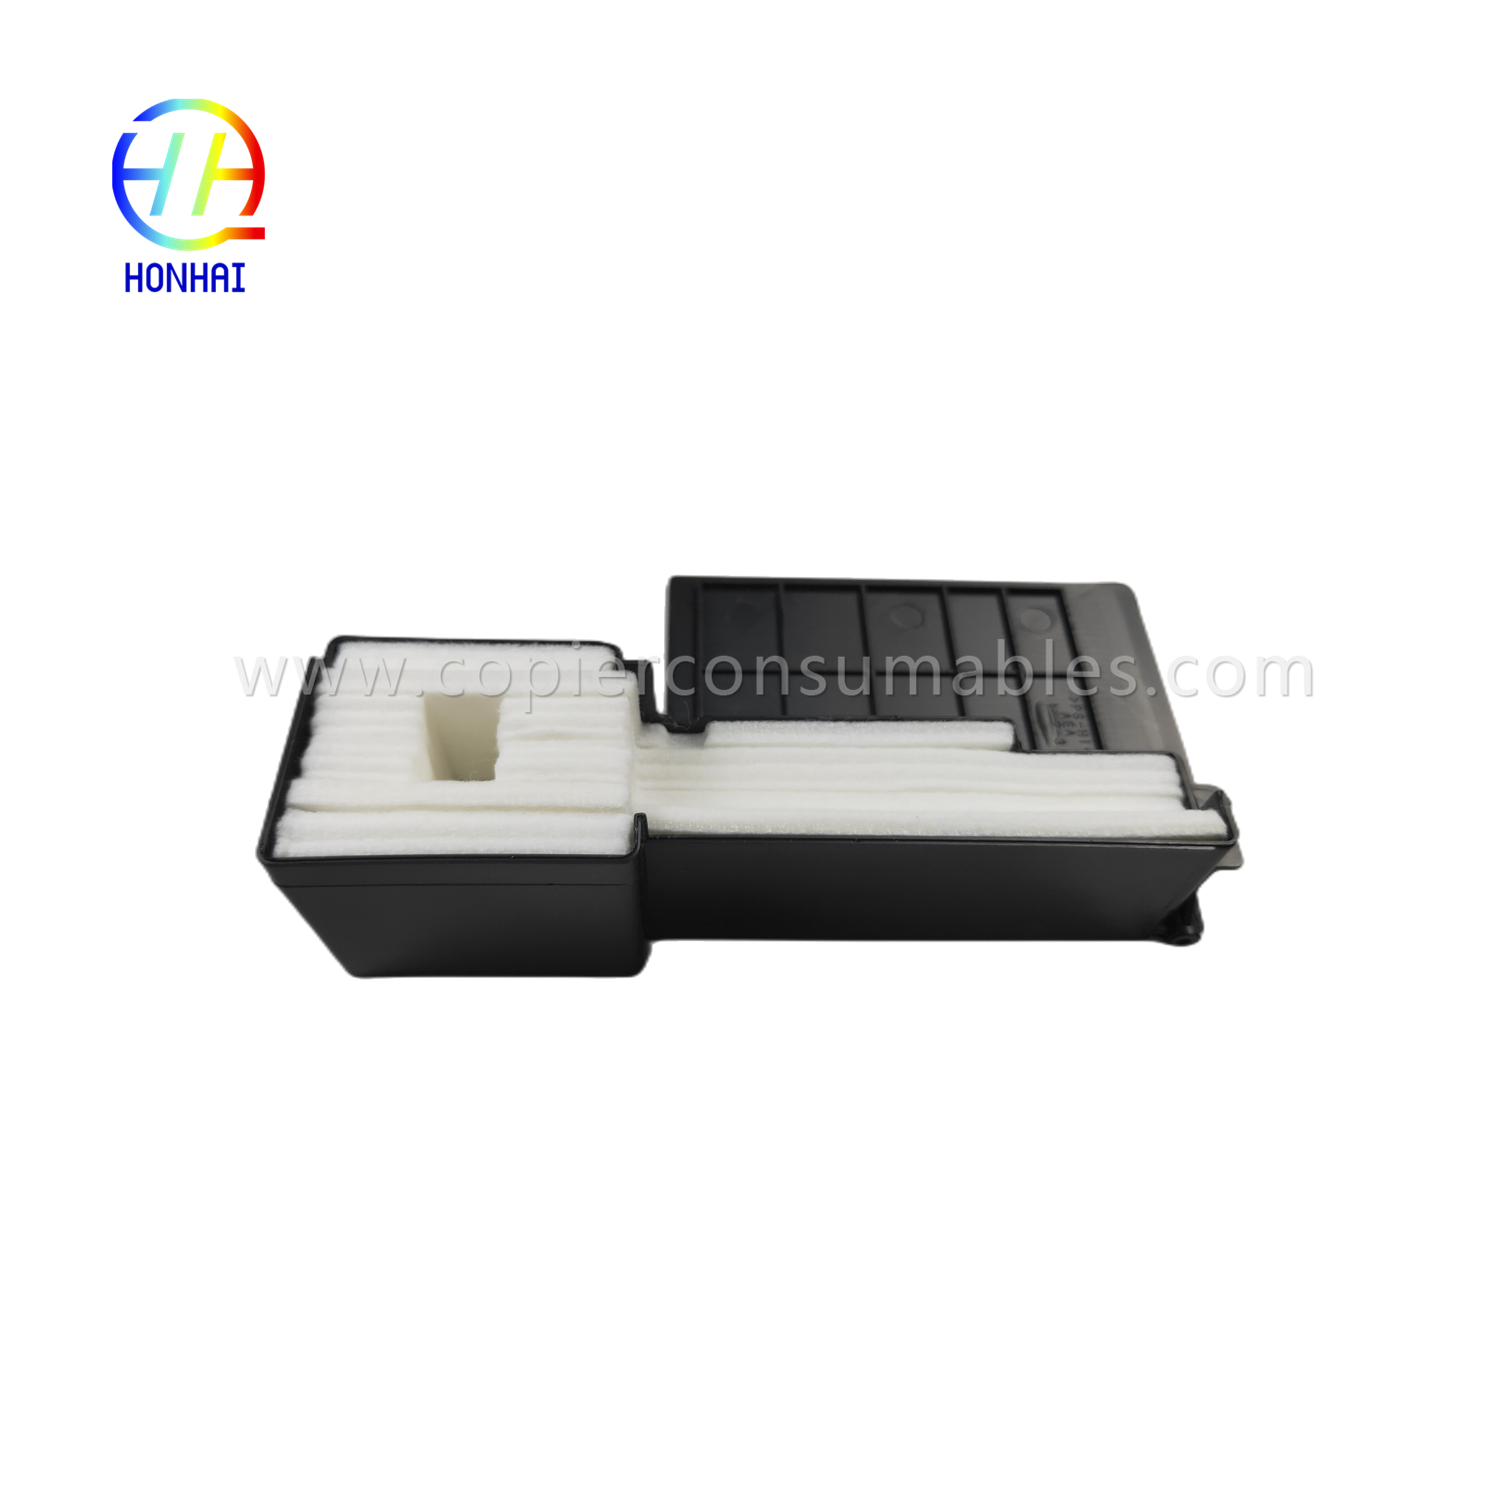 Limbah Ink Pad Pack untuk Printer Epson L220 L360 L380